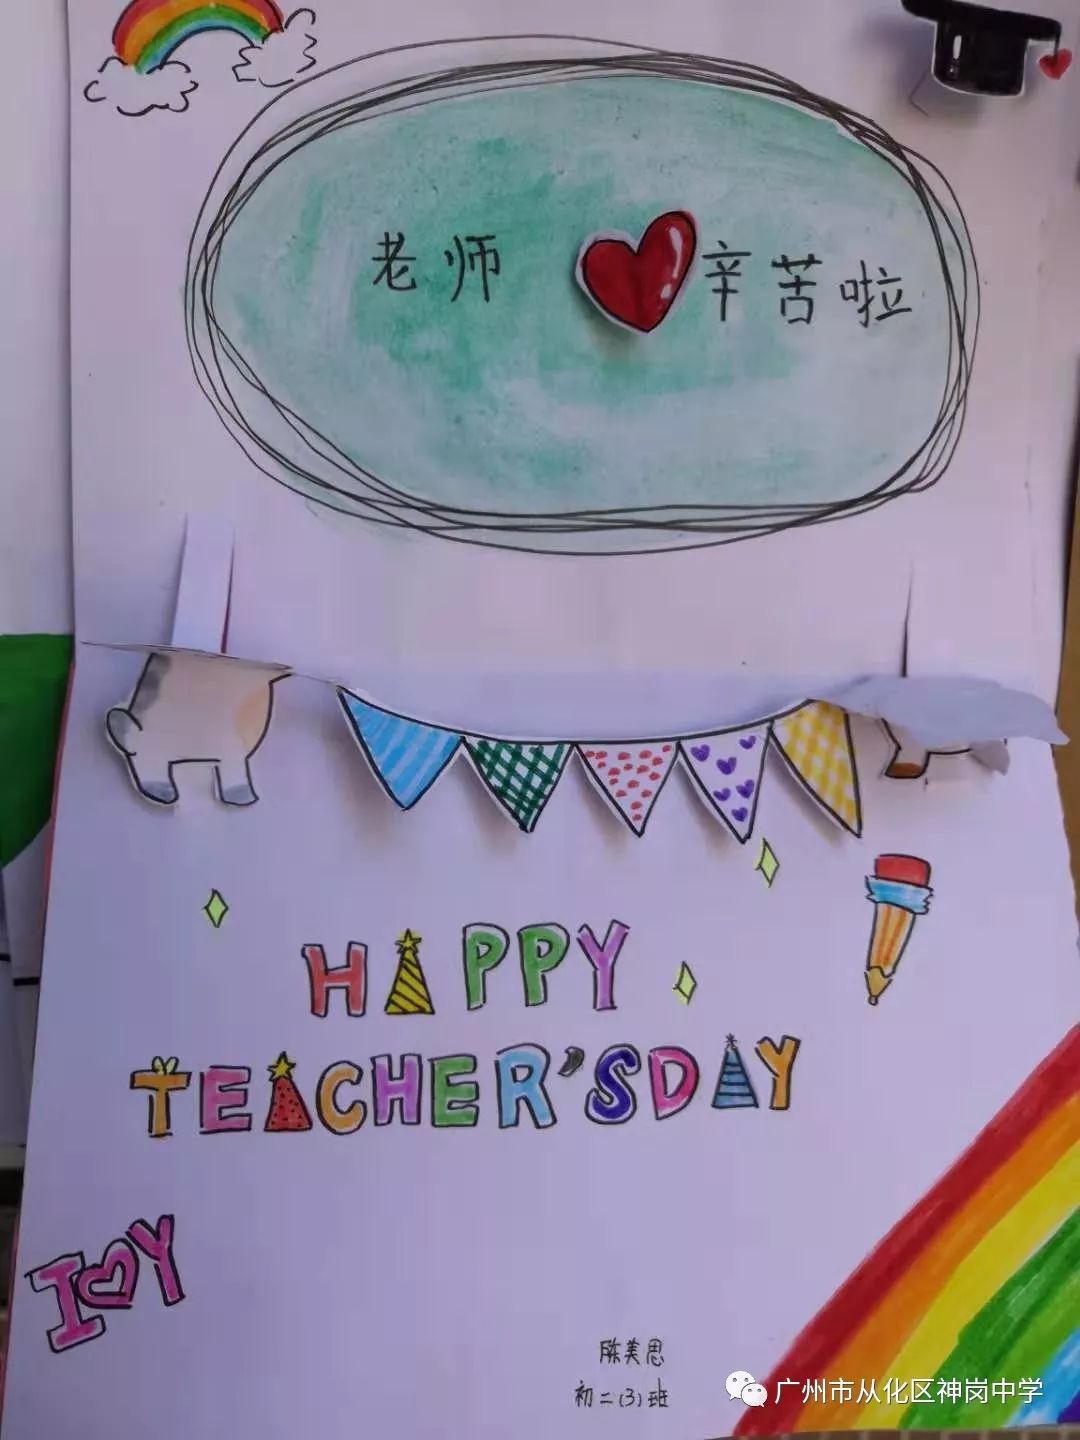 『教师节贺卡』感恩教师节,神中学子送给老师最走心的